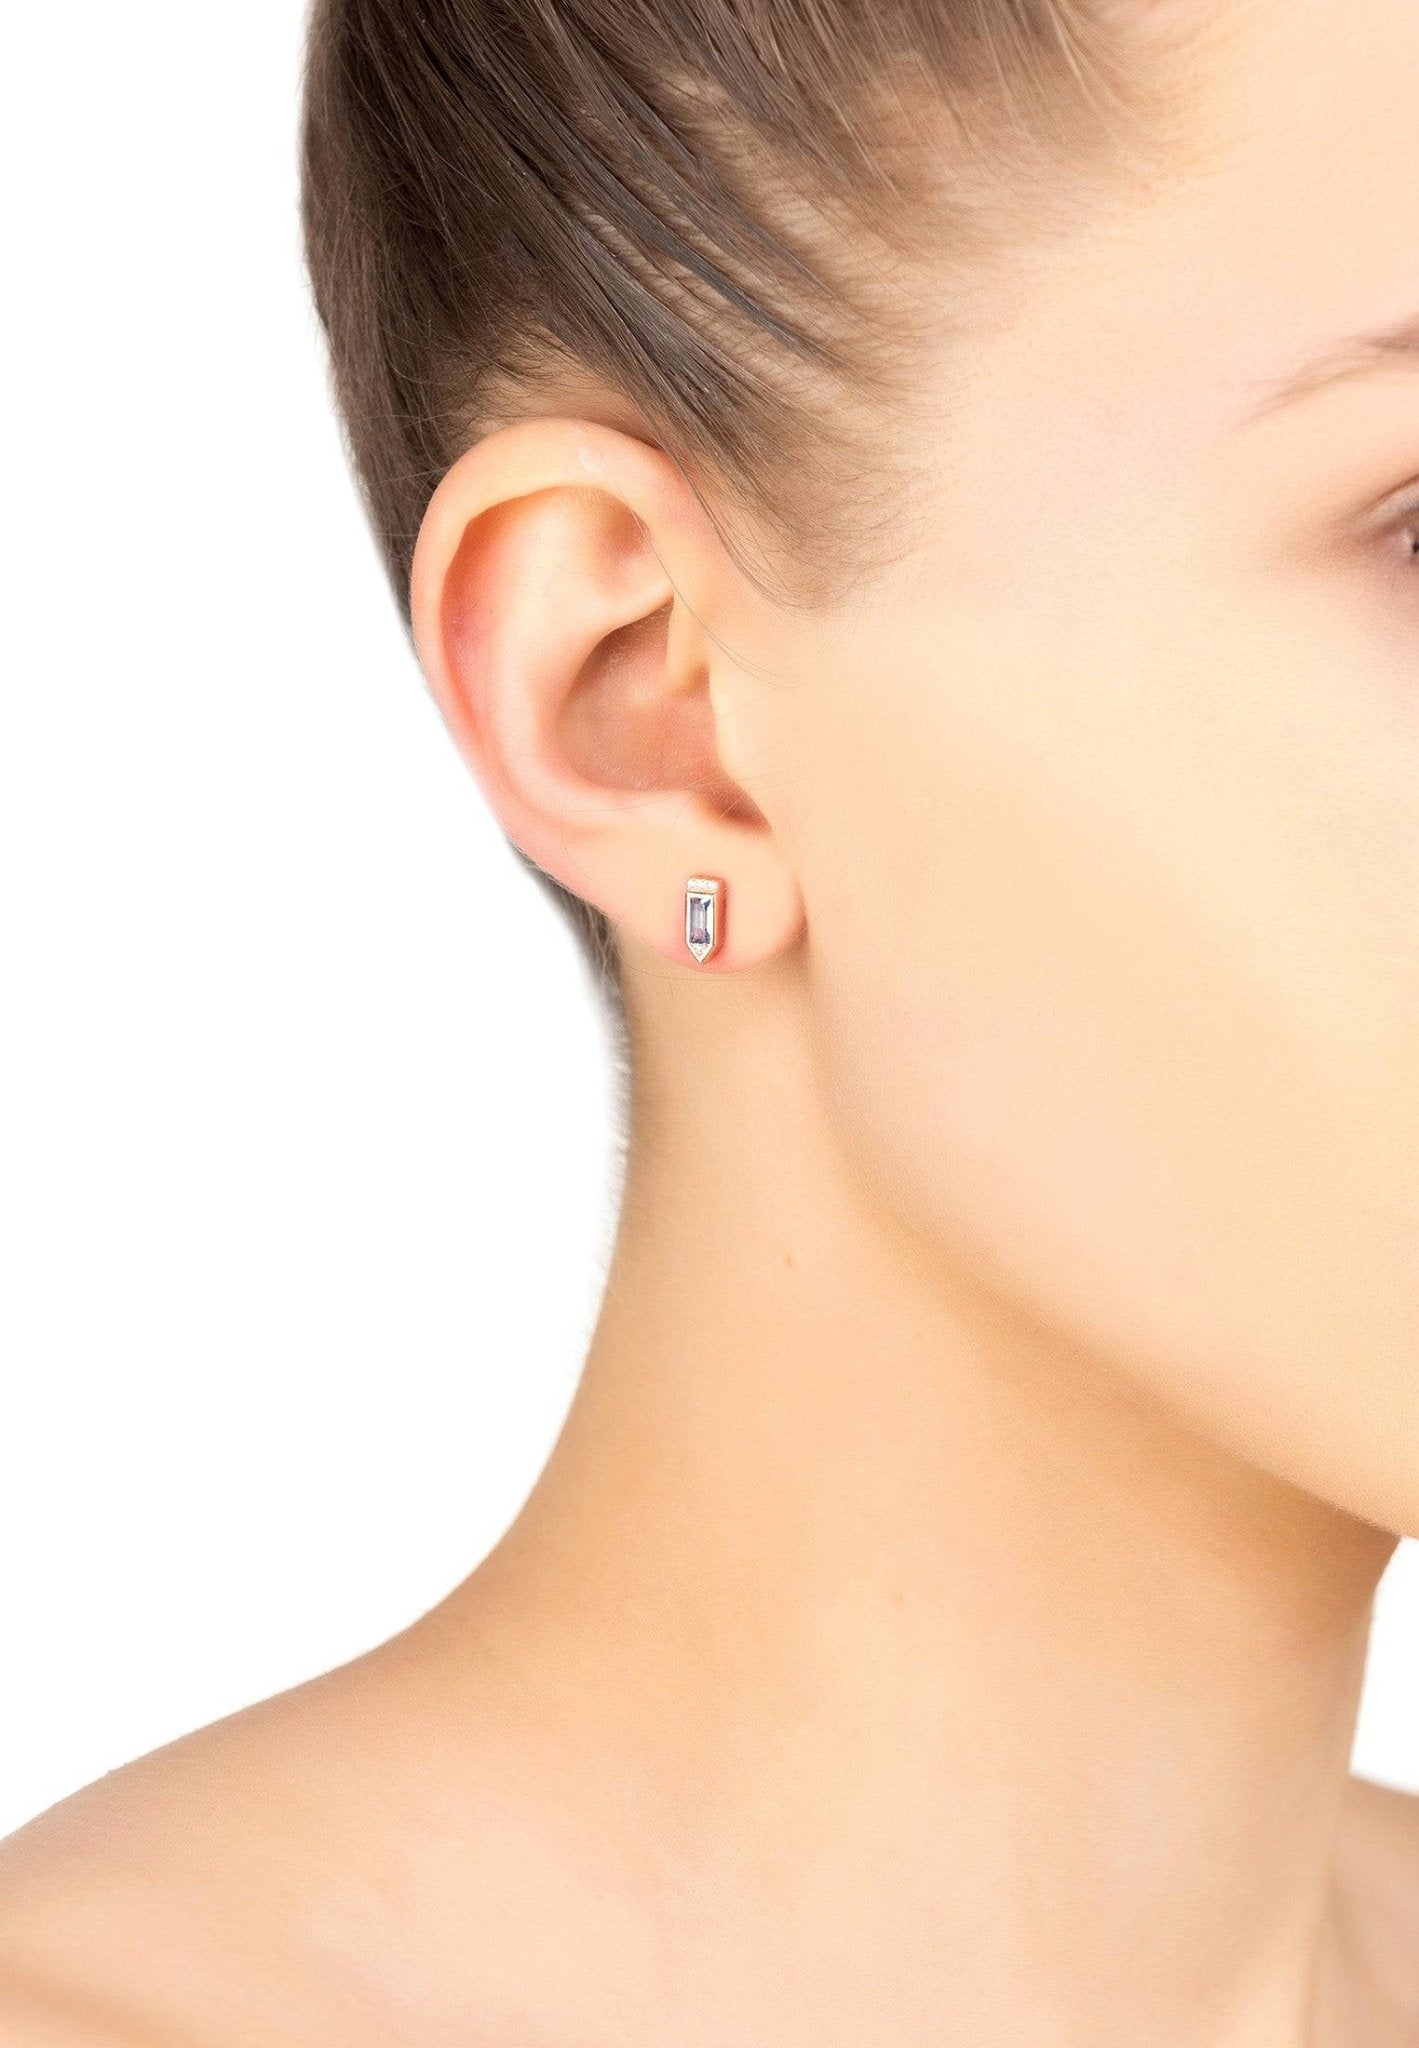 Manhattan Stud Earrings Blue Topaz Rosegold - LATELITA Earrings